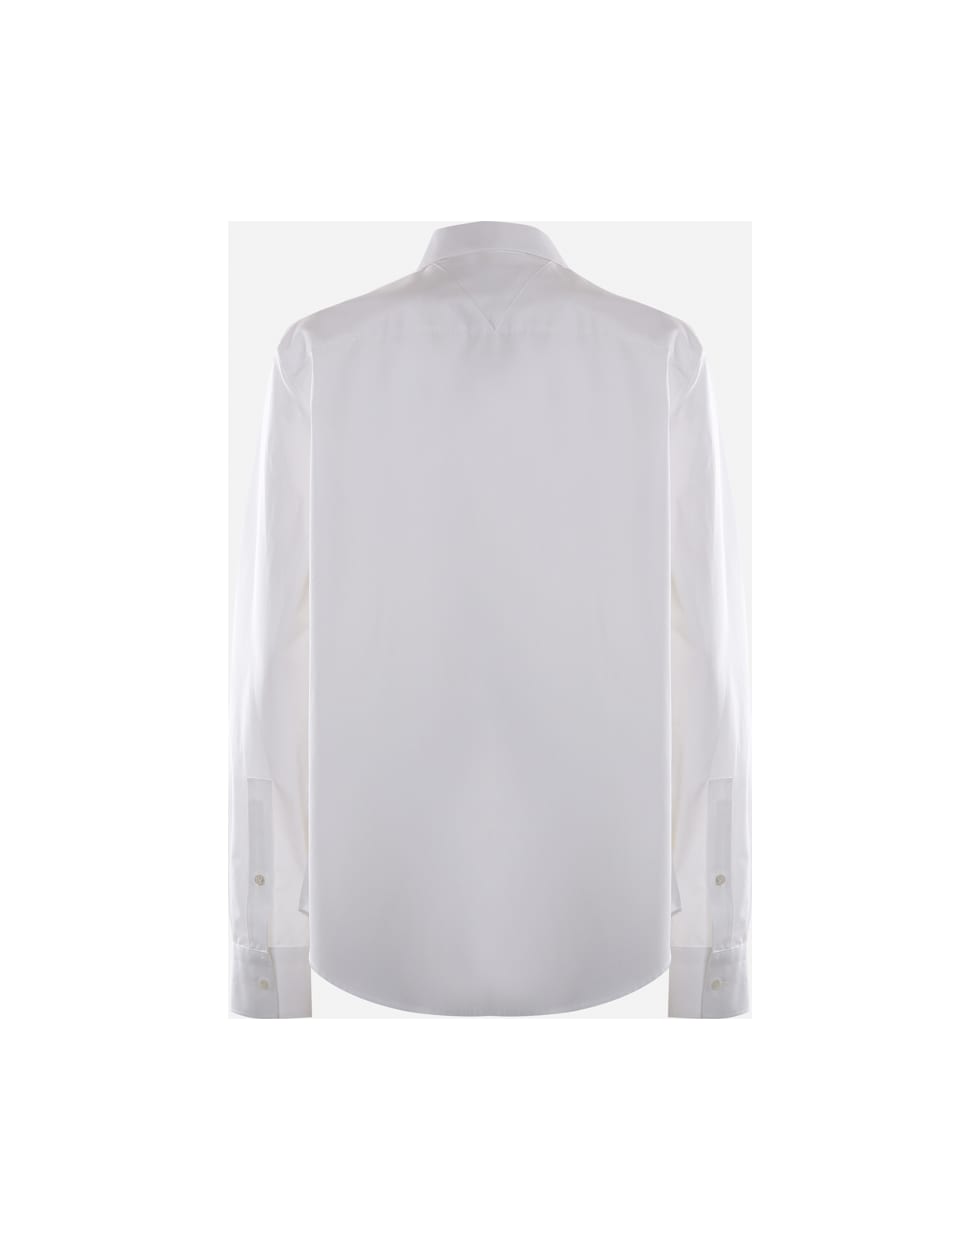 Bottega Veneta Basic Shirt Made Of Cotton - White